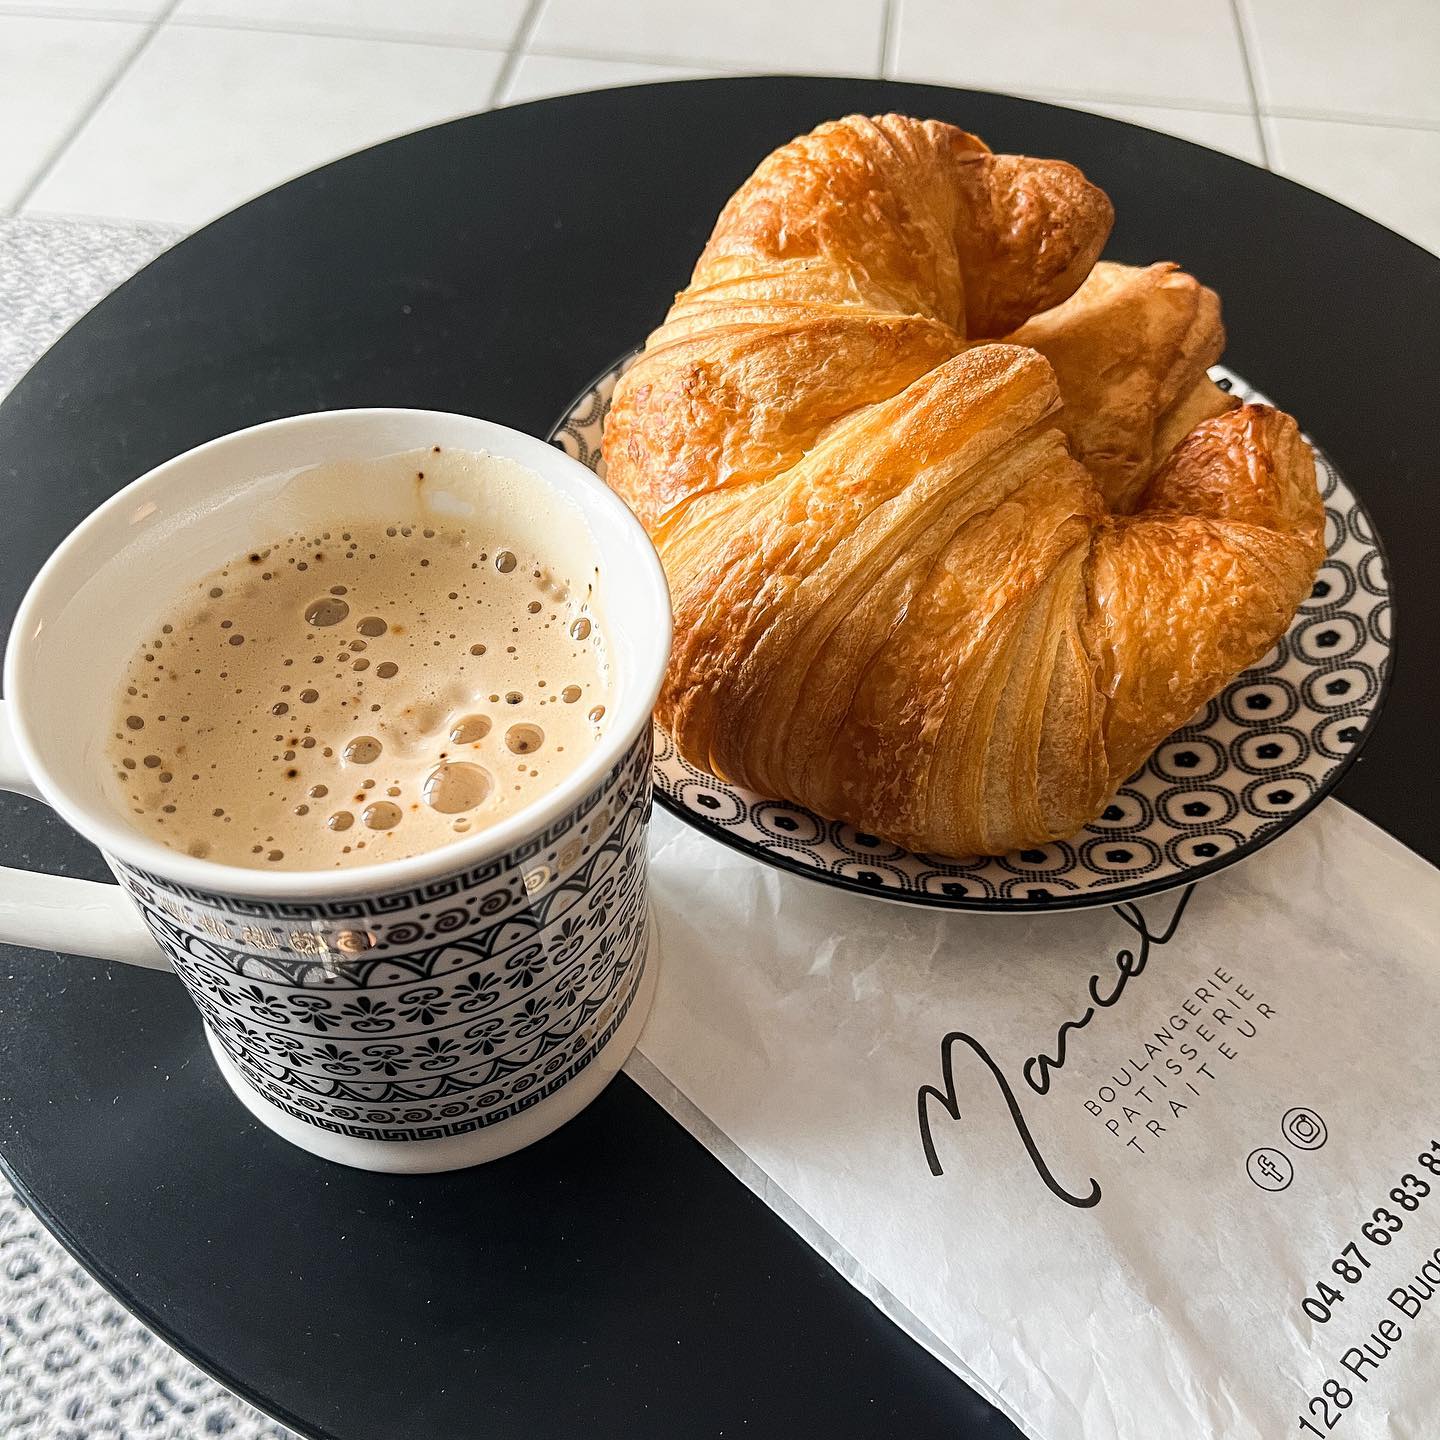 [𝙶𝚘𝚘𝚍 𝙼𝚘𝚛𝚗𝚒𝚗𝚐 🥐]

Bien commencer le week-end avec ce cappuccino et les viennoiseries de @marcel.boulangerie 🤤.
Merci @gorillasapp.fr pour la livraison ! Qu’avez-vous prévu de votre côté ? ☺️😘

————————————————————

#cuisine #cuisinemoi #weekend #boulangerie #boulangerielyon #croissant #painauchocolat #lyon #lyonfood #viennoiseries #ruebugeaud #lyon6 #cuisine #igers #igerslyon #food #foodporn #foodpics